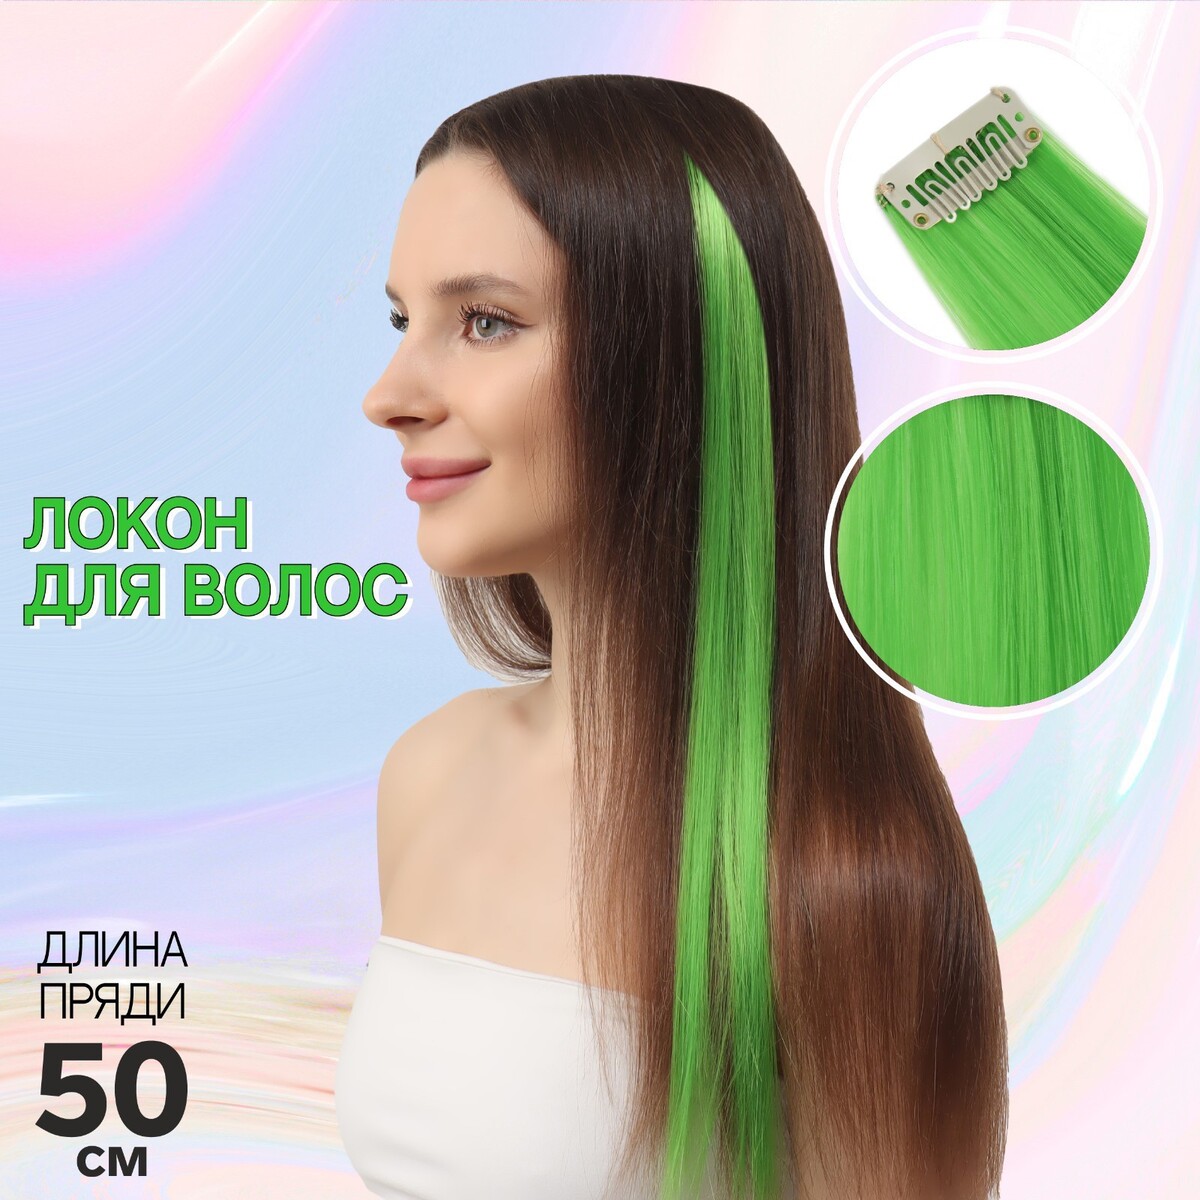 Локон накладной, прямой волос, на заколке, 50 см, 5 гр, цвет зеленый локон накладной единорог прямой волос на заколке 40 см микс